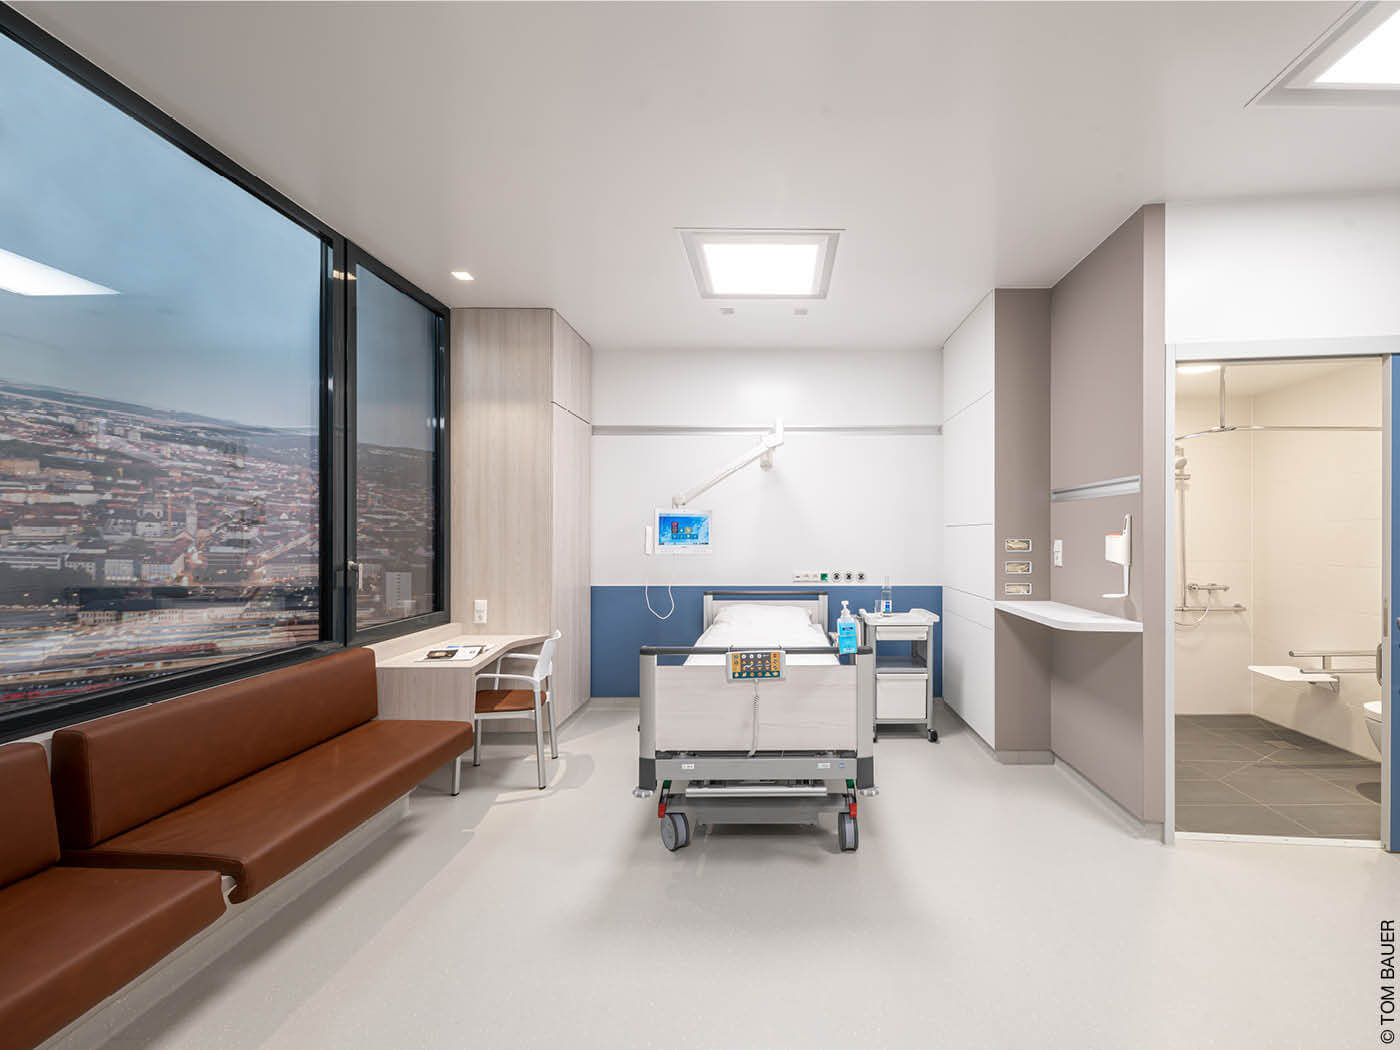 Zimmer in einem Krankenhaus